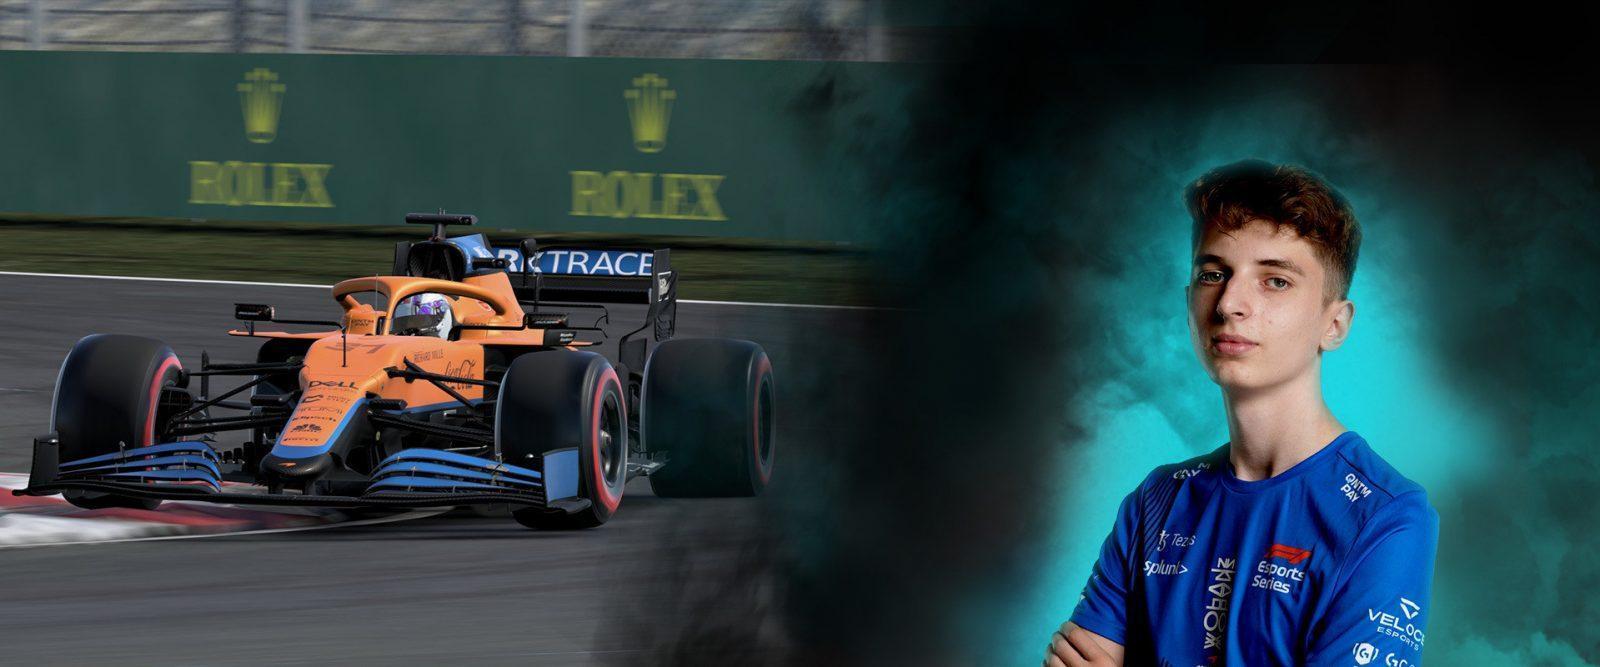 Tomek Poradzisz: An F1 Esports Challenger approaches